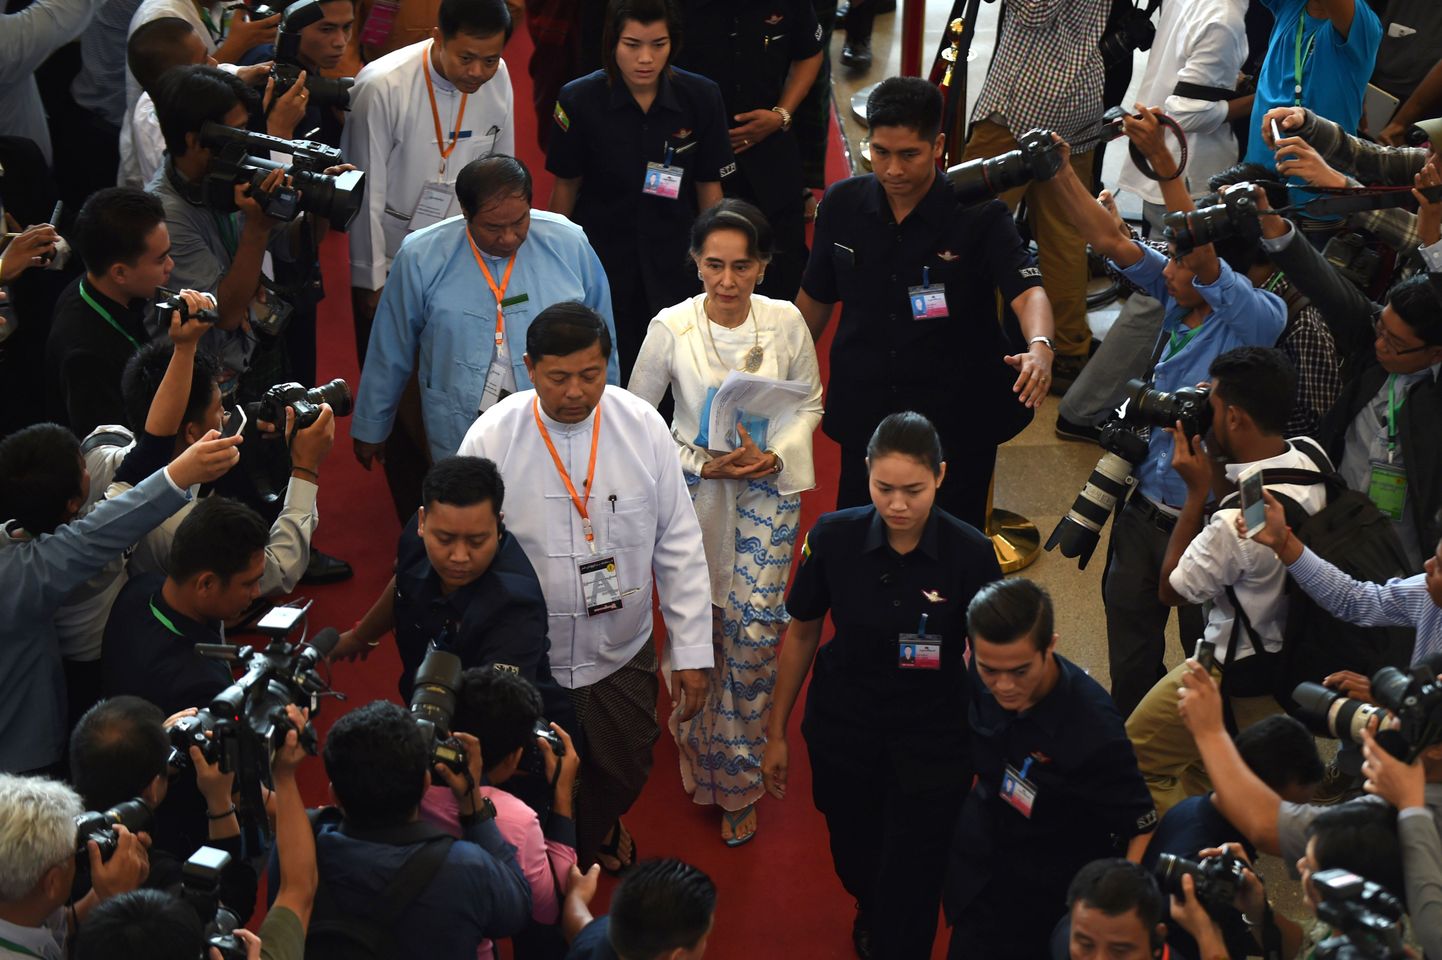 Riigi de facto liider Aung San Suu Kyi saabumas rahukõnelustele.